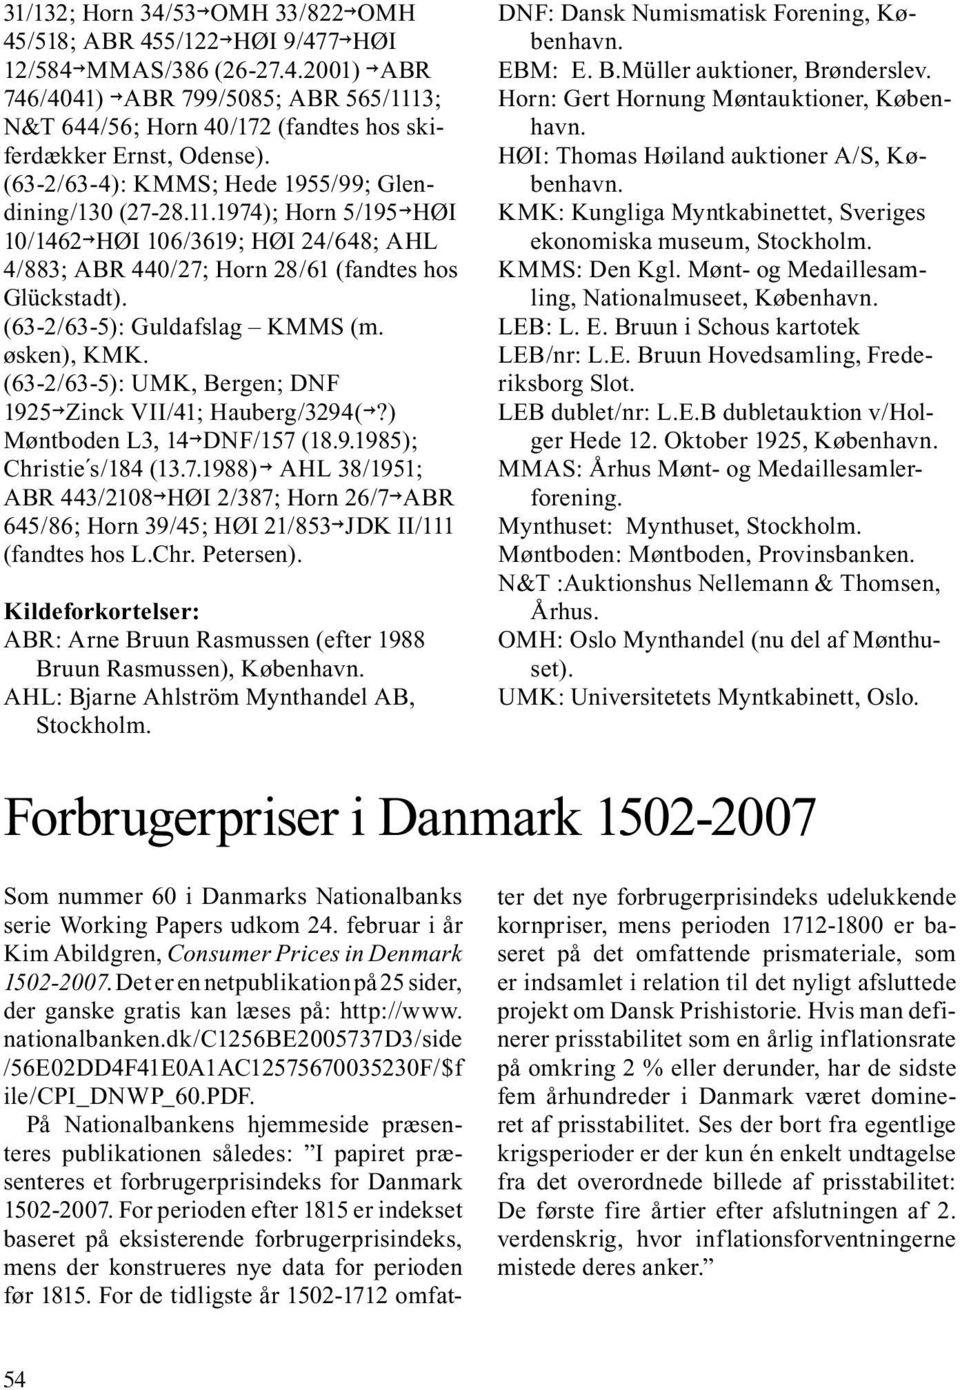 (63-2/63-5): Guldafslag KMMS (m. øsken), KMK. (63-2/63-5): UMK, Bergen; DNF 1925 Zinck VII/41; Hauberg/3294(?) Møntboden L3, 14 DNF/157 